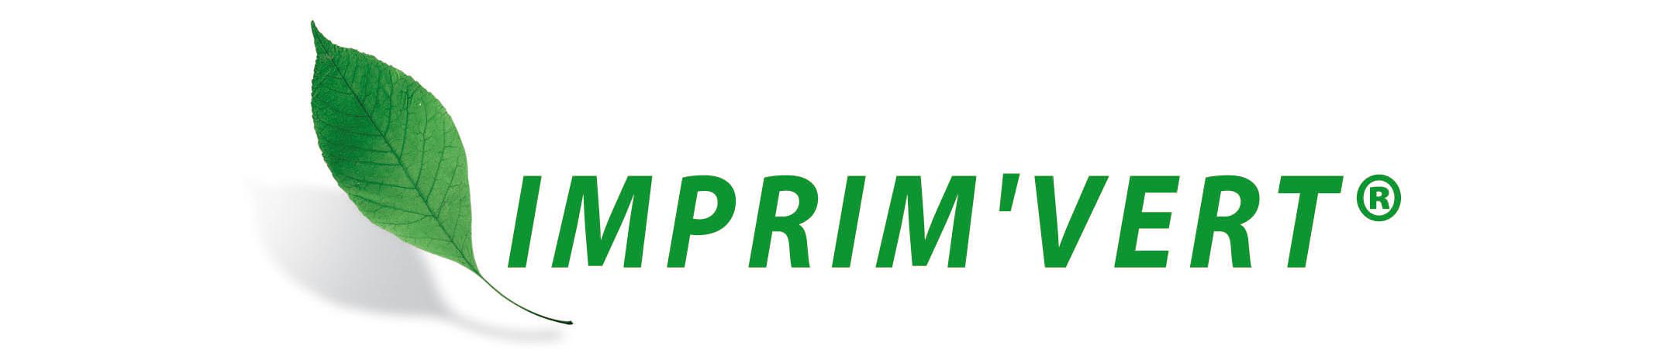 Logo imprim'vert - la marque des imprimeurs respectueux de l'environnement